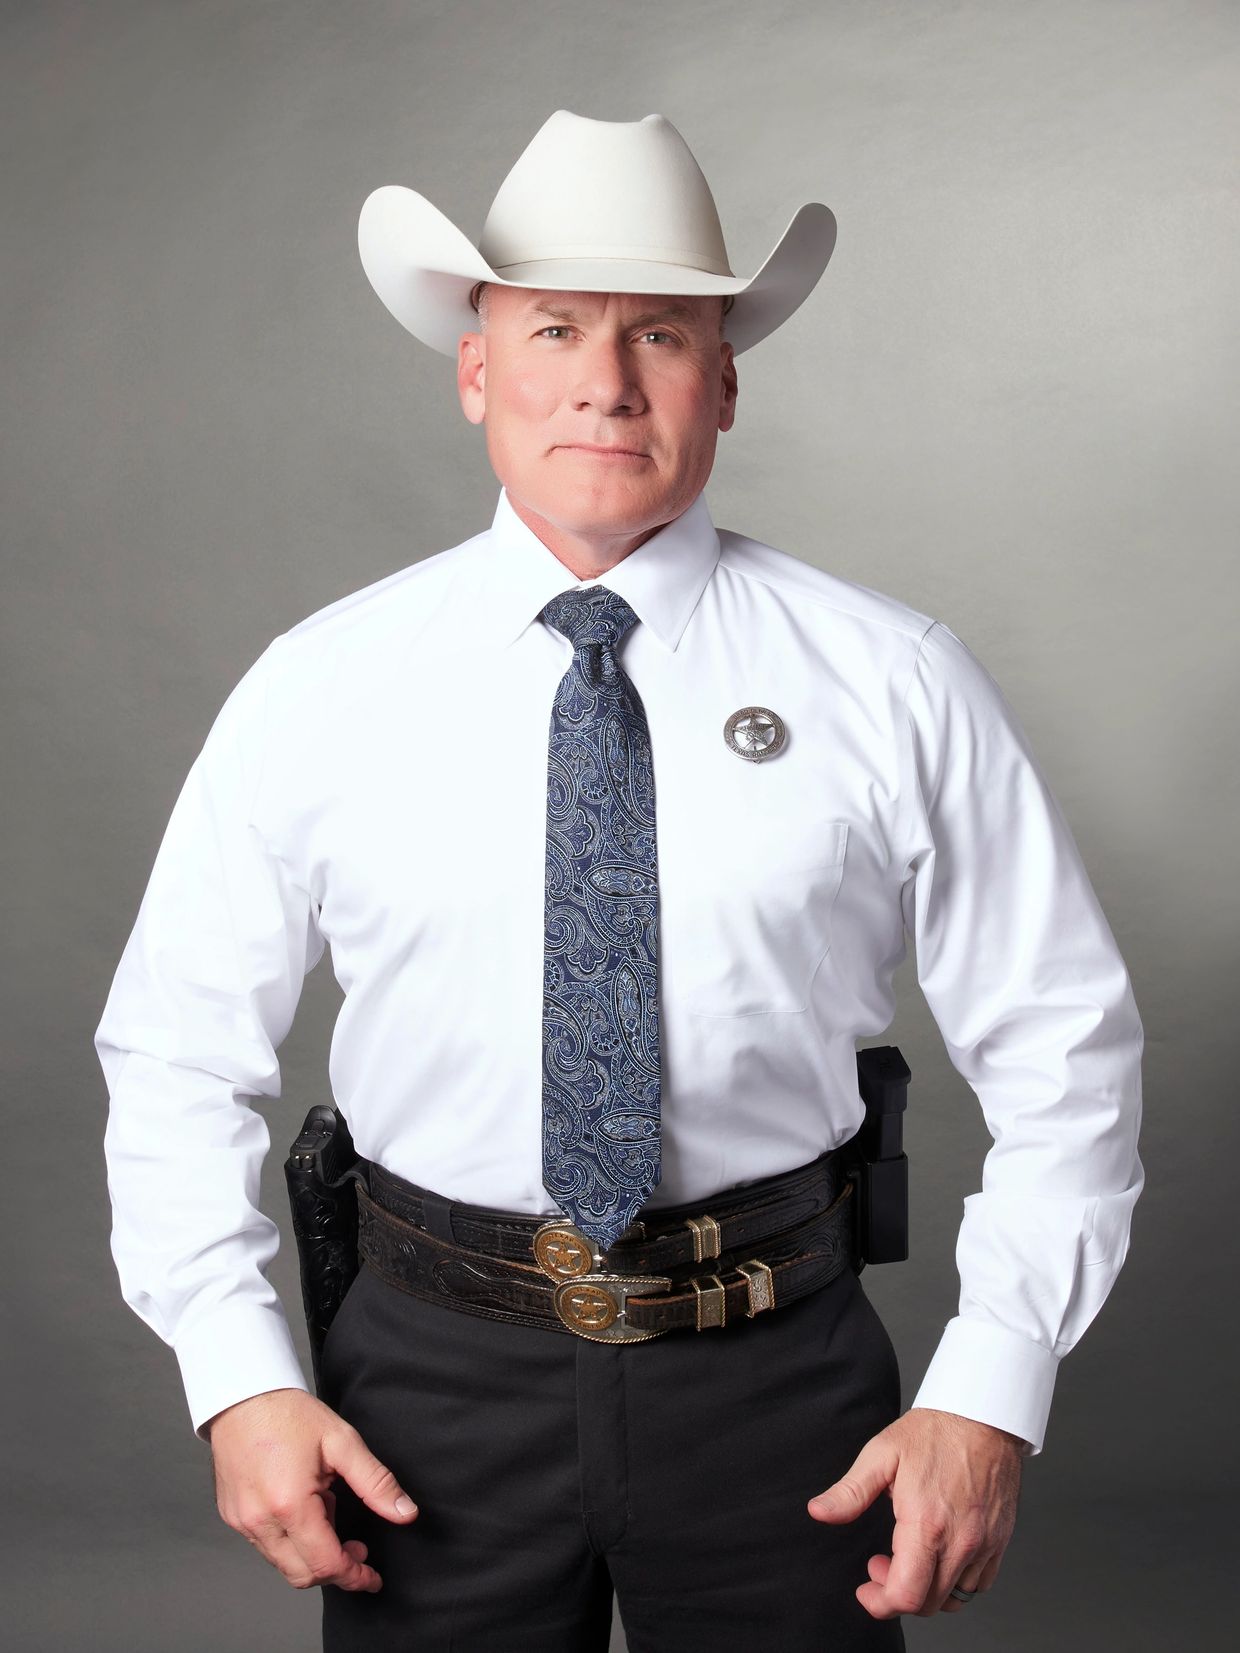 Texas Ranger Police Shirt